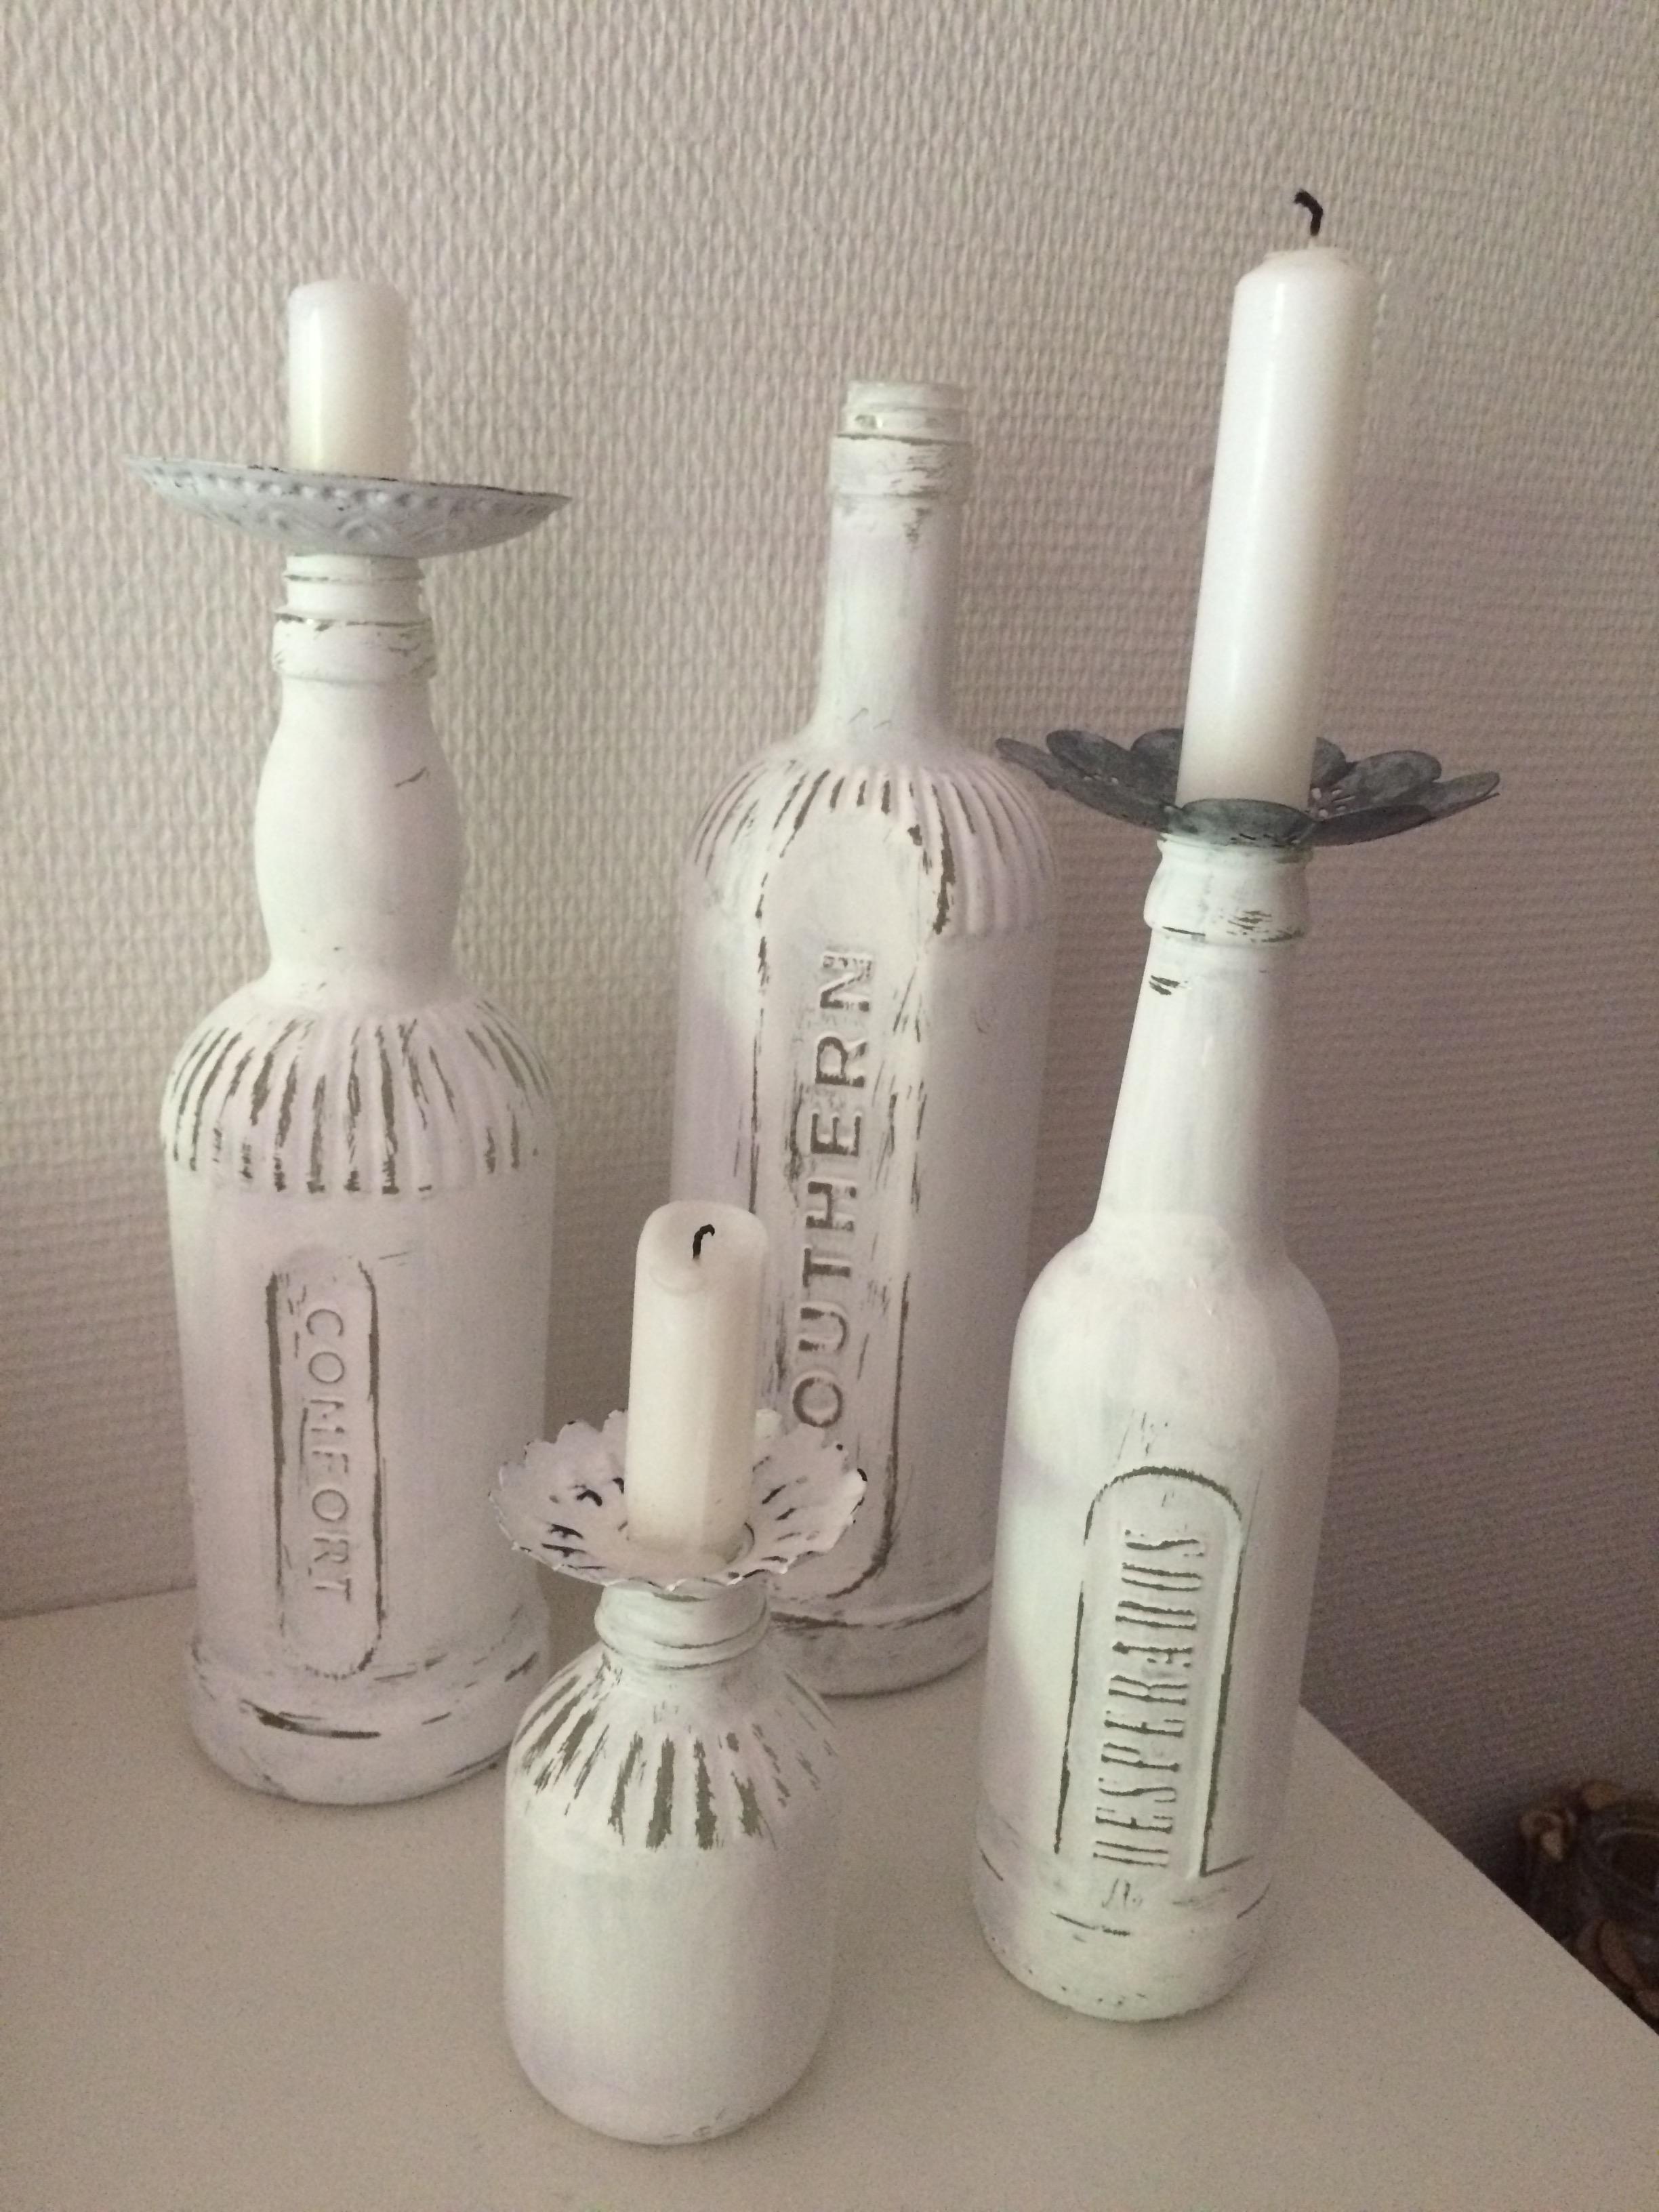 #lieblingsdiy 
Flaschen mit Kreidefarbe für Glas bemalt und als Kerzenständer umfunktioniert. 